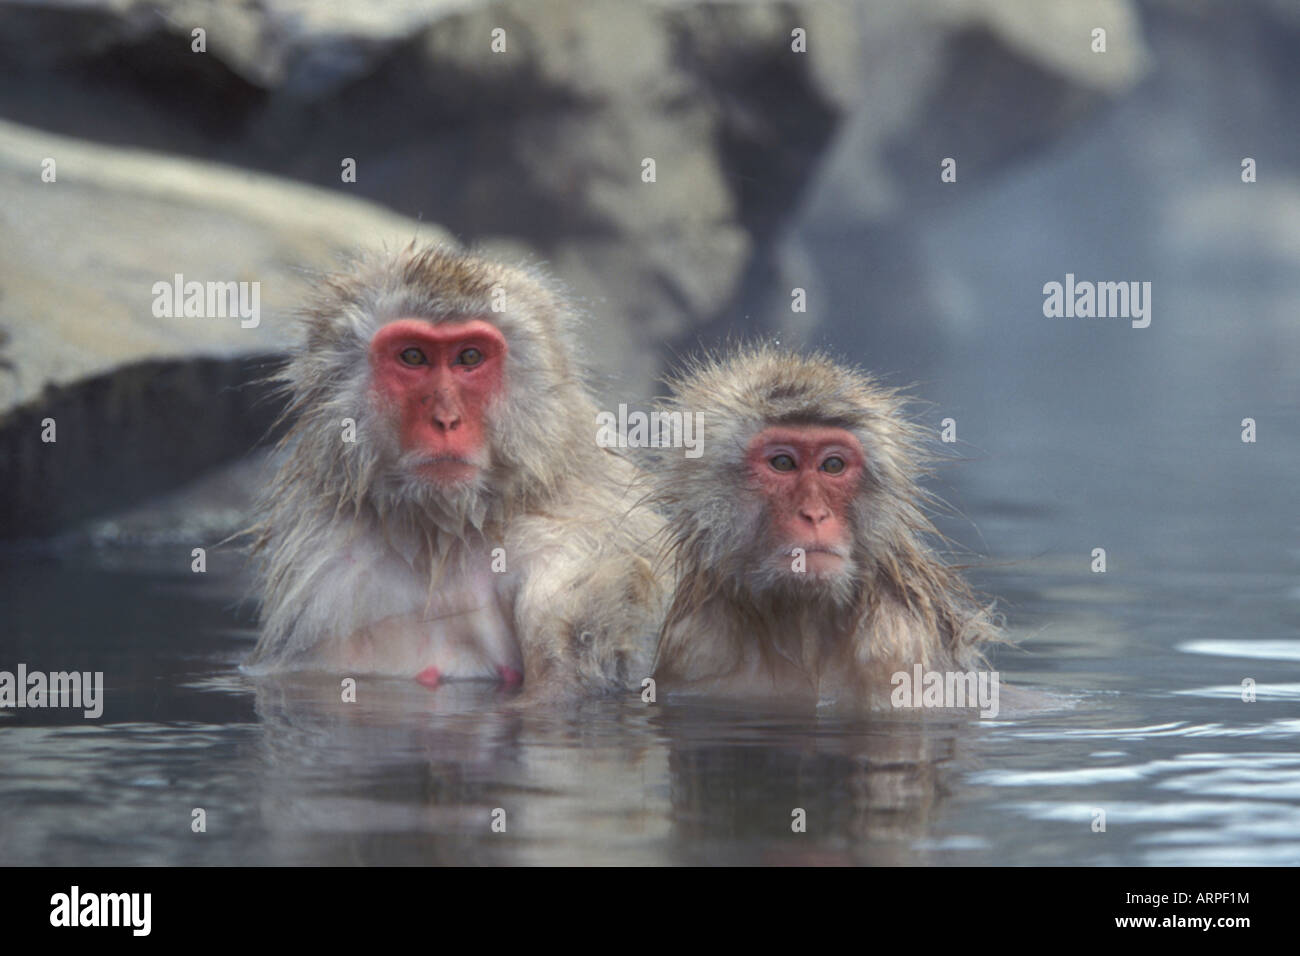 Neve le scimmie in piscina termale, kogen national park Giappone Foto stock  - Alamy